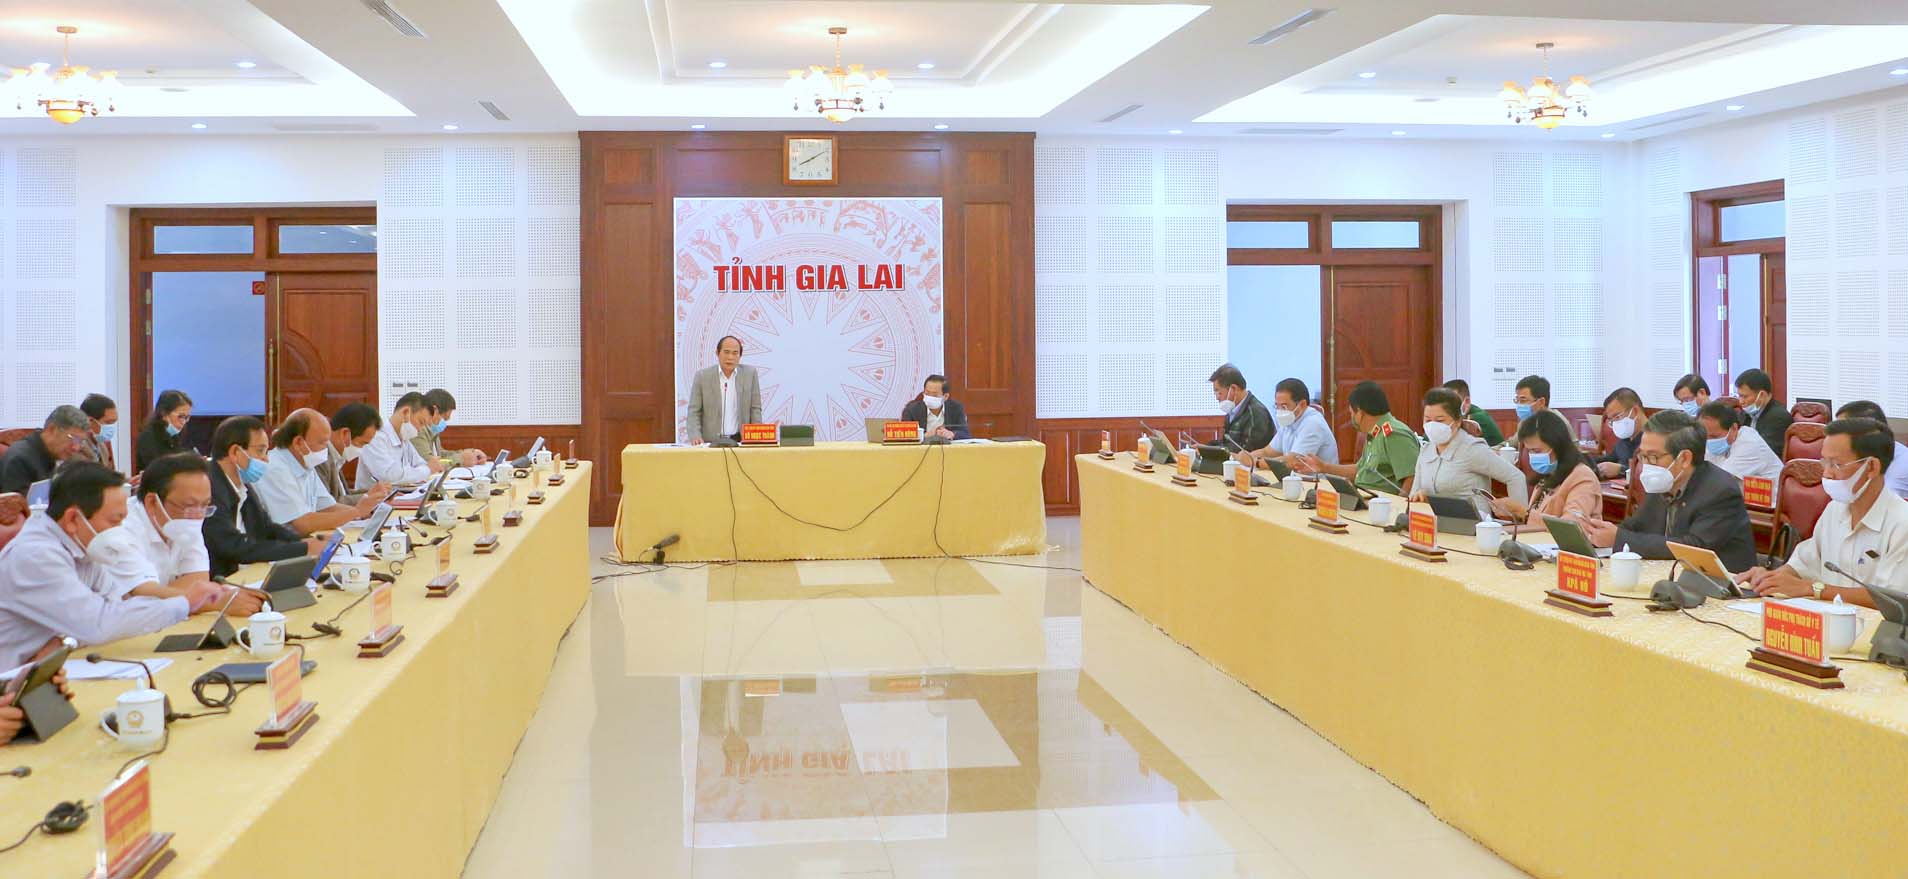 Chủ tịch UBND tỉnh Võ Ngọc Thành: Phấn đấu hoàn thành các chỉ tiêu, nhiệm vụ năm 2021